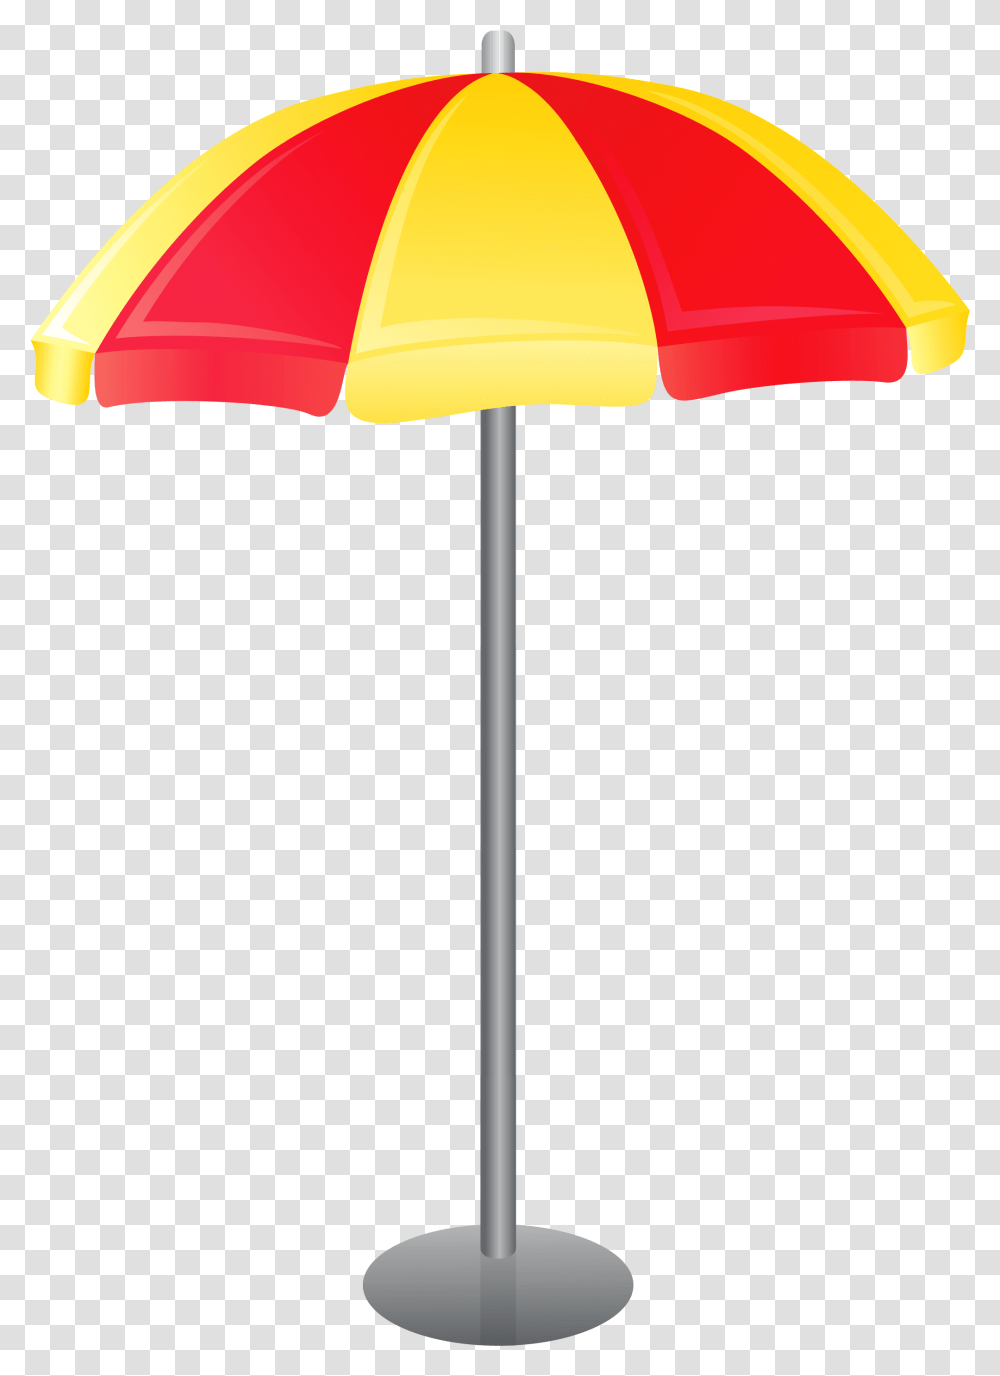 Beach Umbrella Vector Clipart Beach Umbrella Vector, Lamp, Patio Umbrella, Garden Umbrella, Canopy Transparent Png